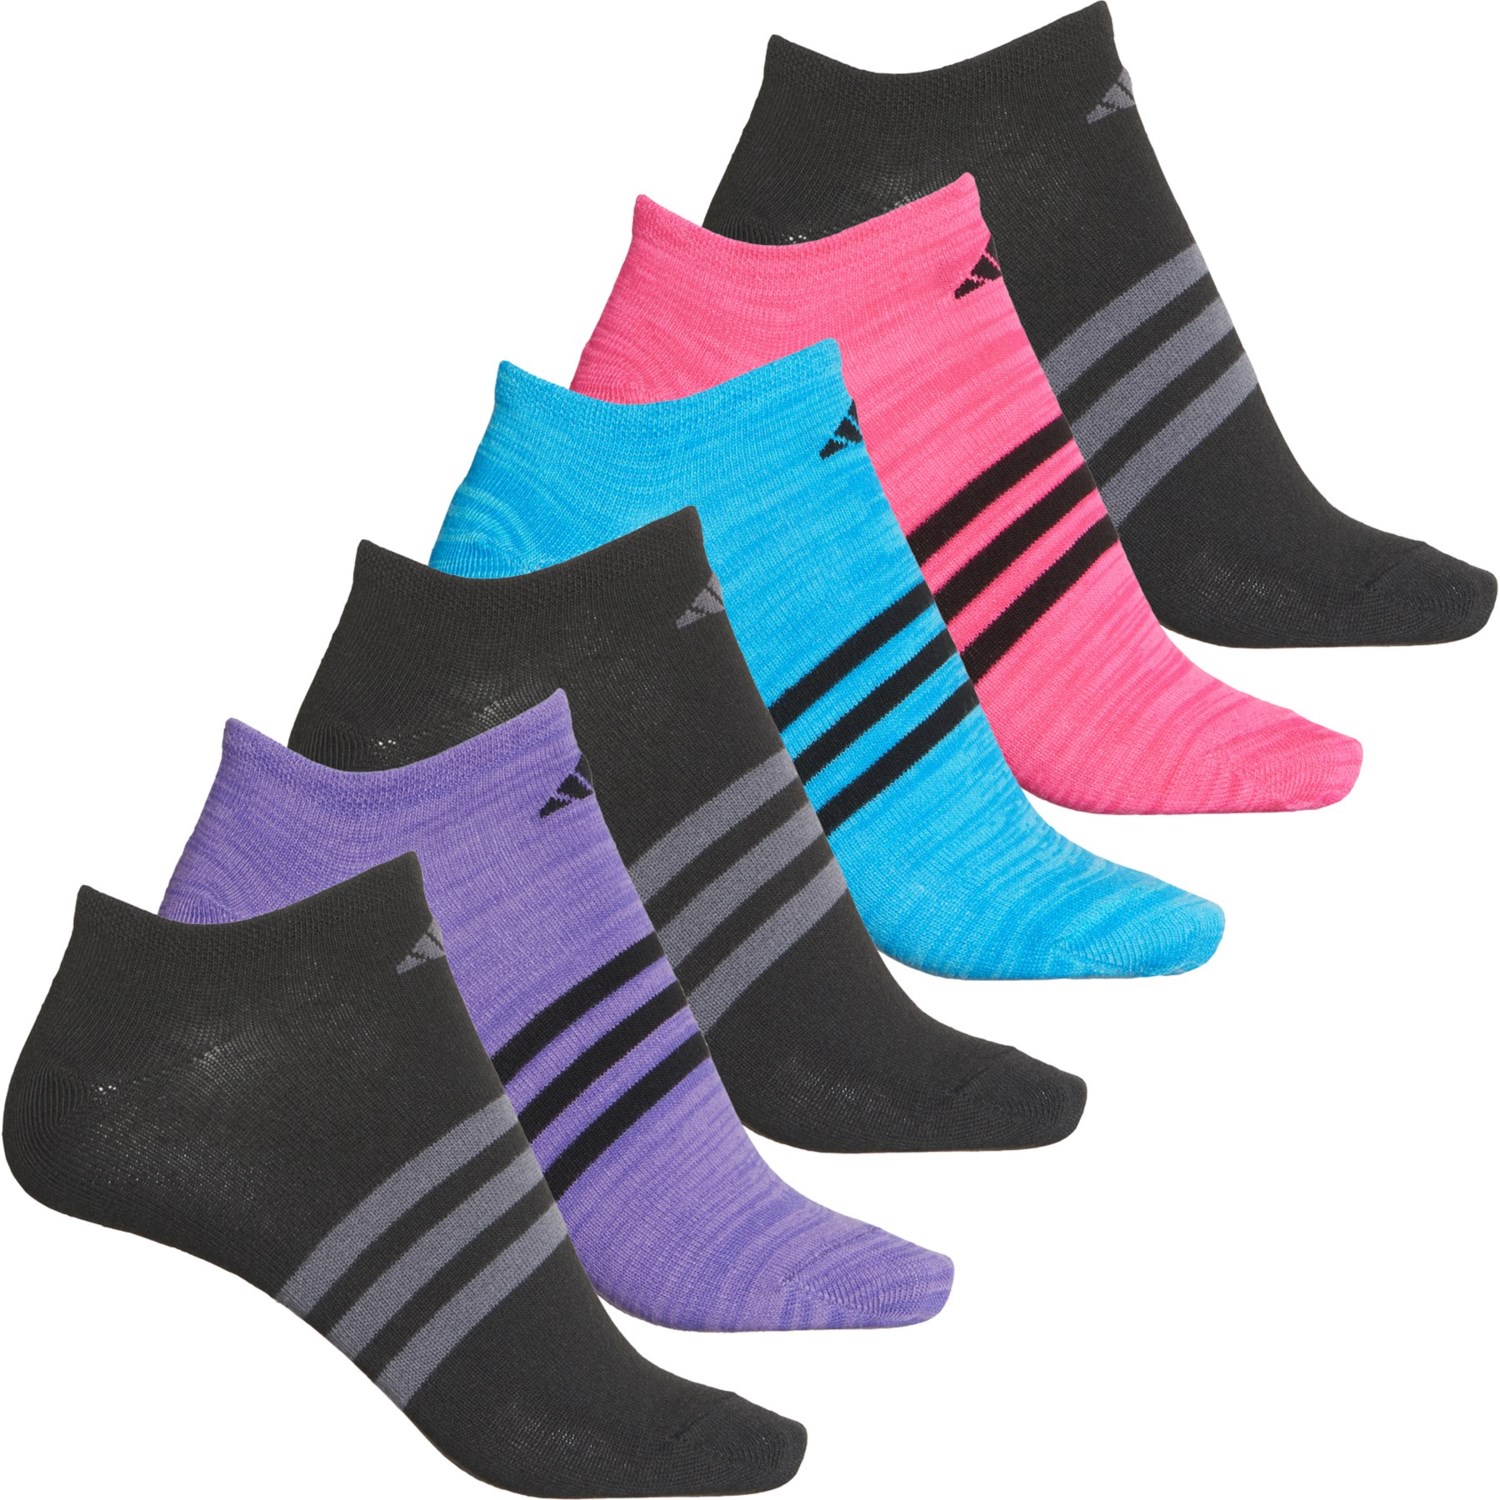 adidas Superlite No-Show Socks (For Women) - Save 33%